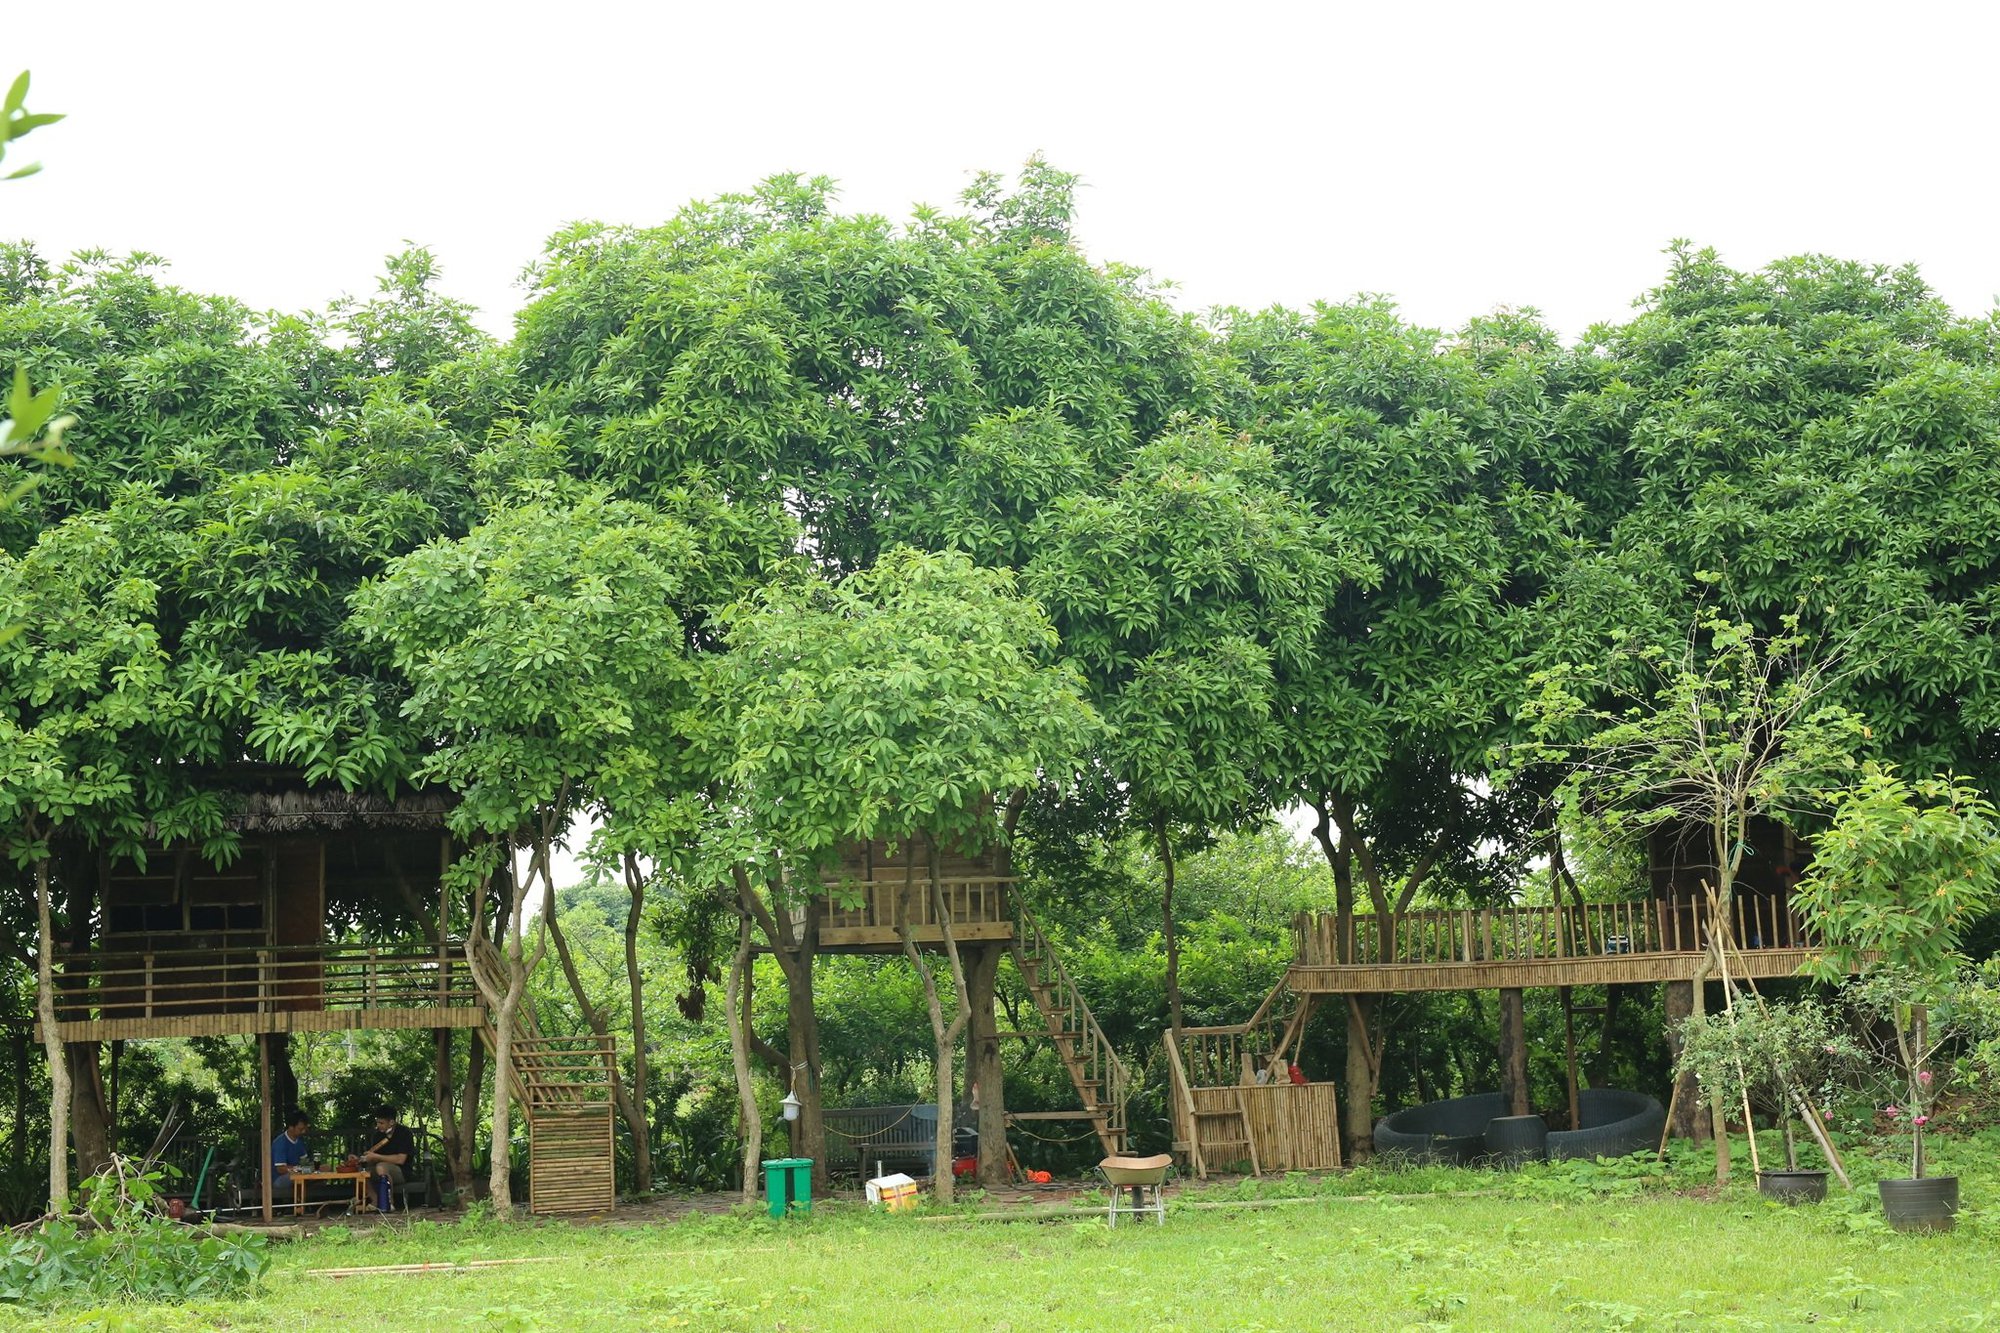 Nhà đẹp: Ông chủ vườn xoài chia sẻ cách làm nhà vườn trên cây cho các gia đình thư giãn cuối tuần  - Ảnh 8.